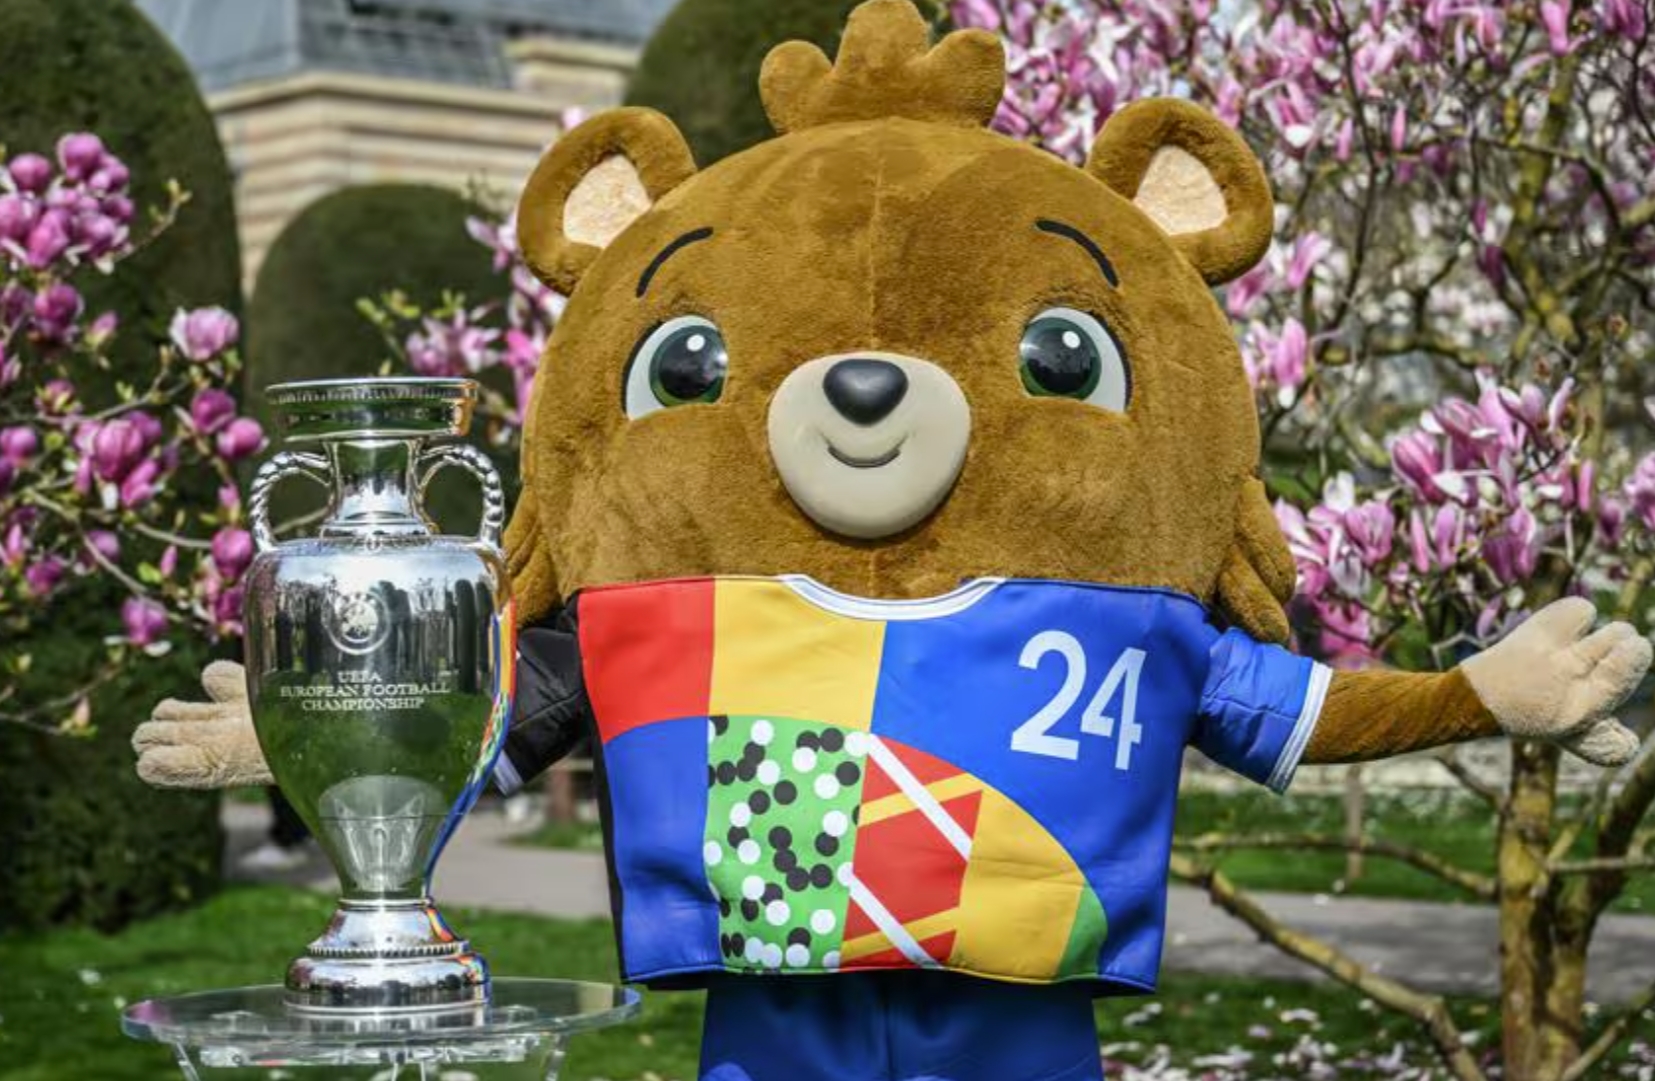 UEFA EURO 2024 Mascot